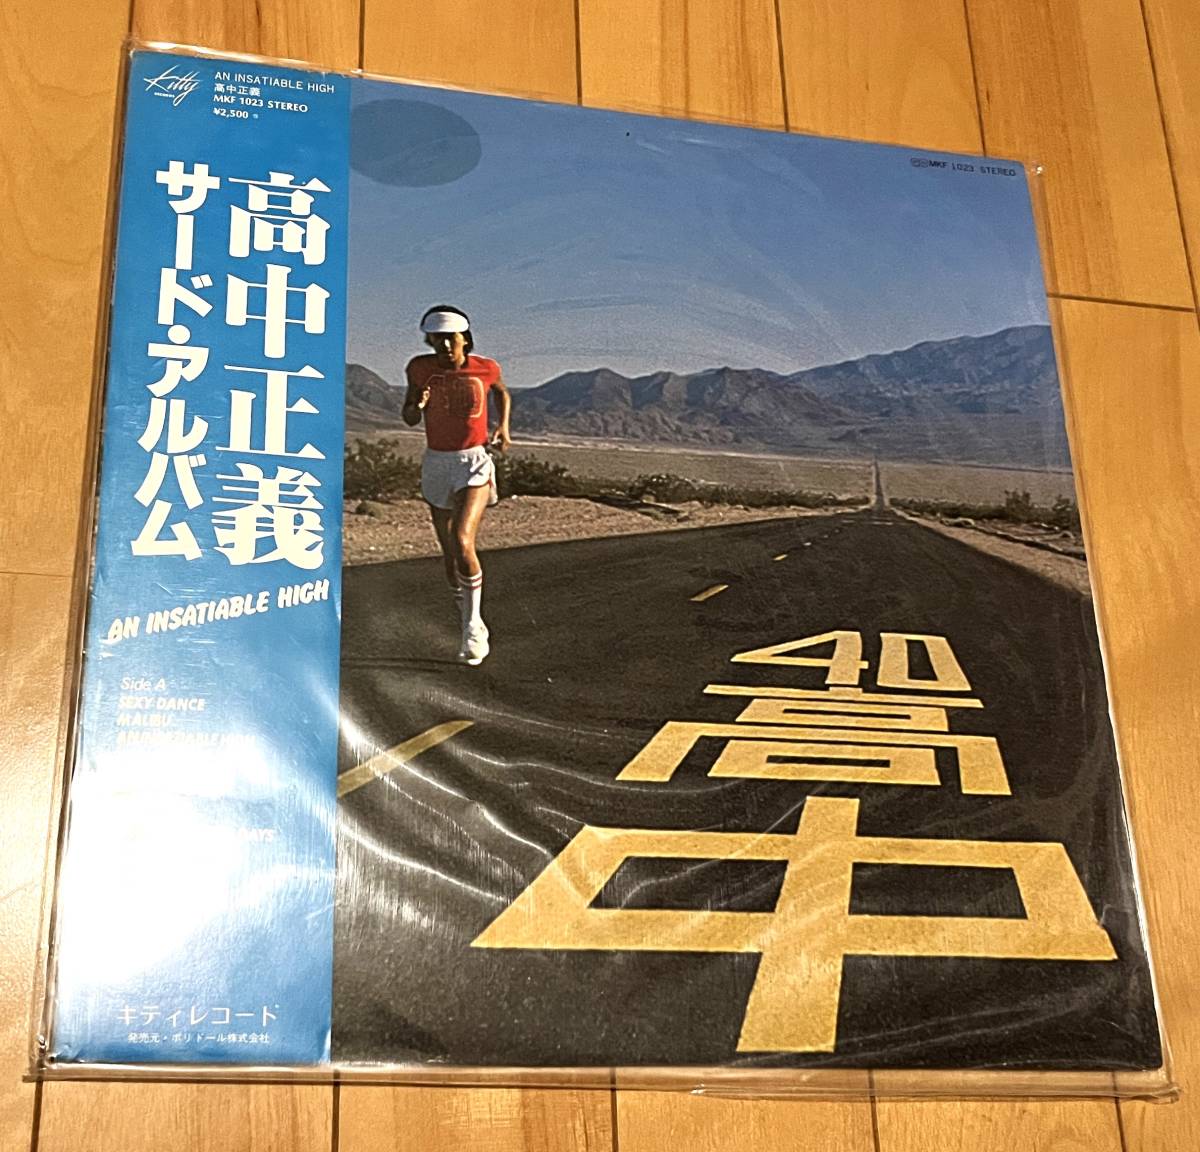 高中正義 サードアルバム / An Insatiable High 帯付き 1977年オリジナル盤 和モノ Masayoshi Takanaka MKF1023_画像1